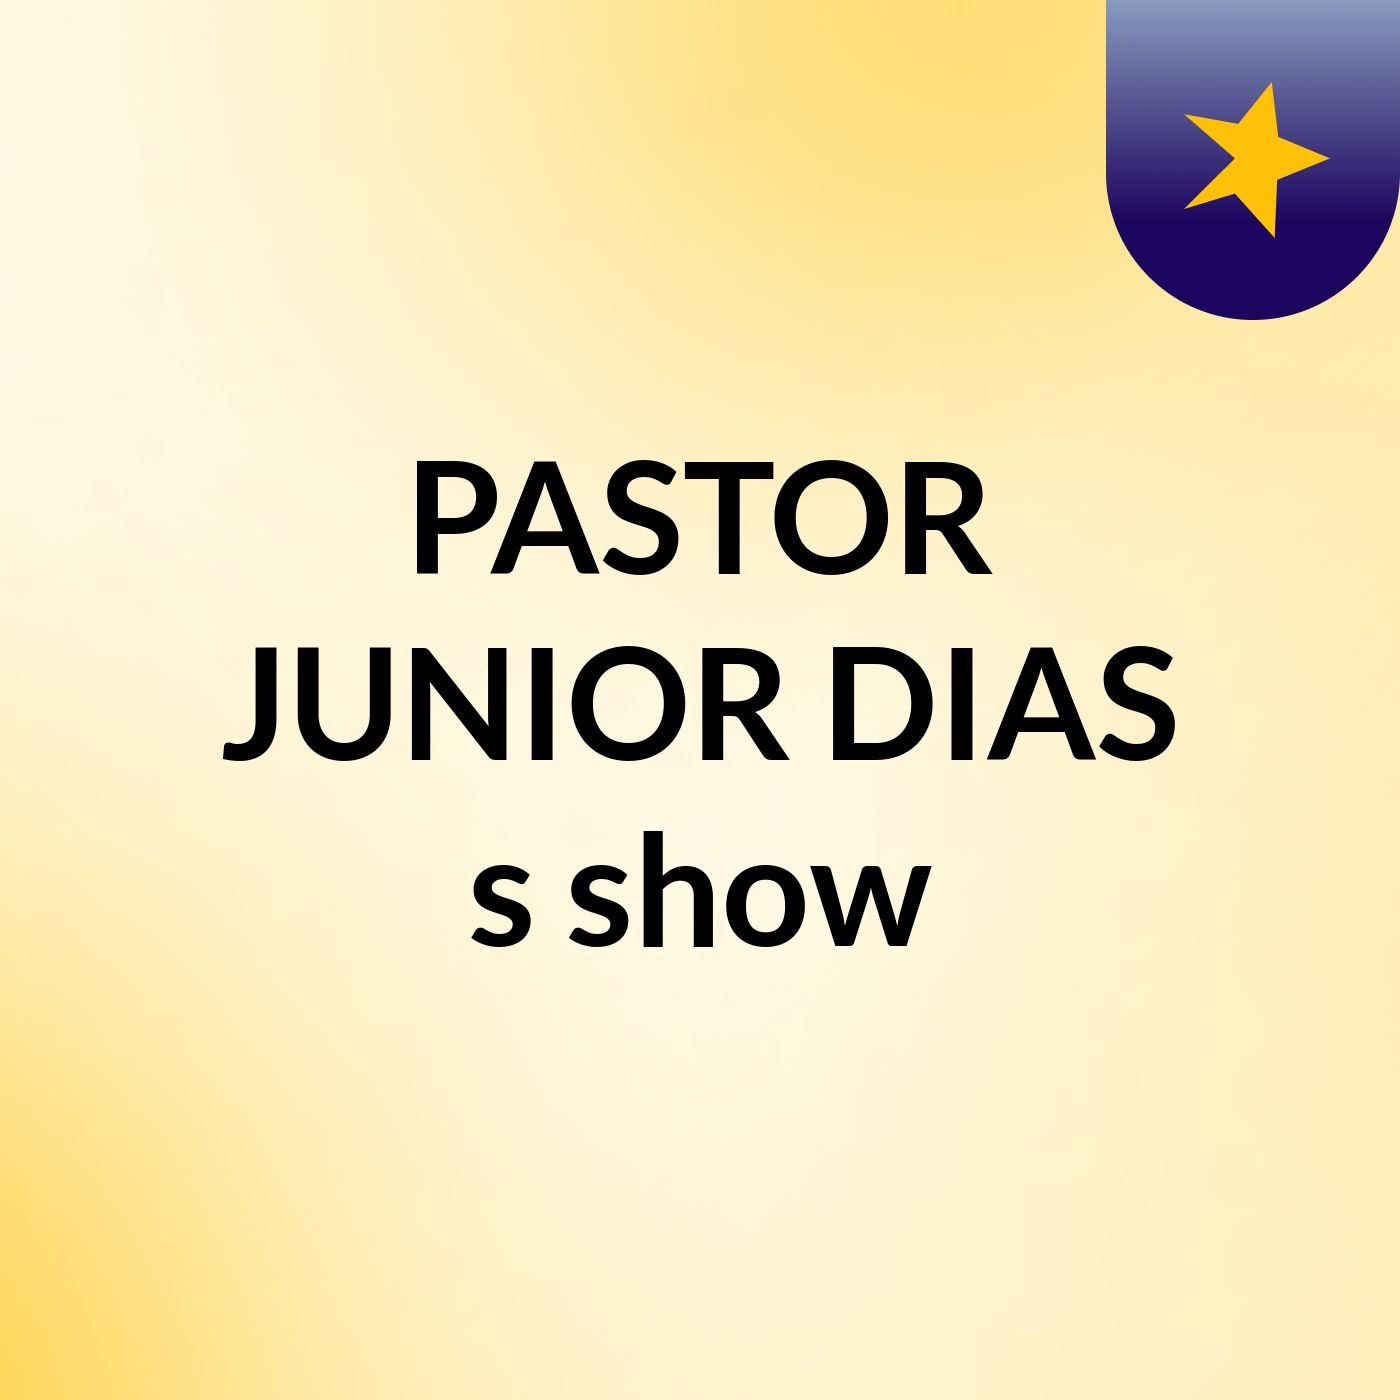 PASTOR JUNIOR DIAS's show